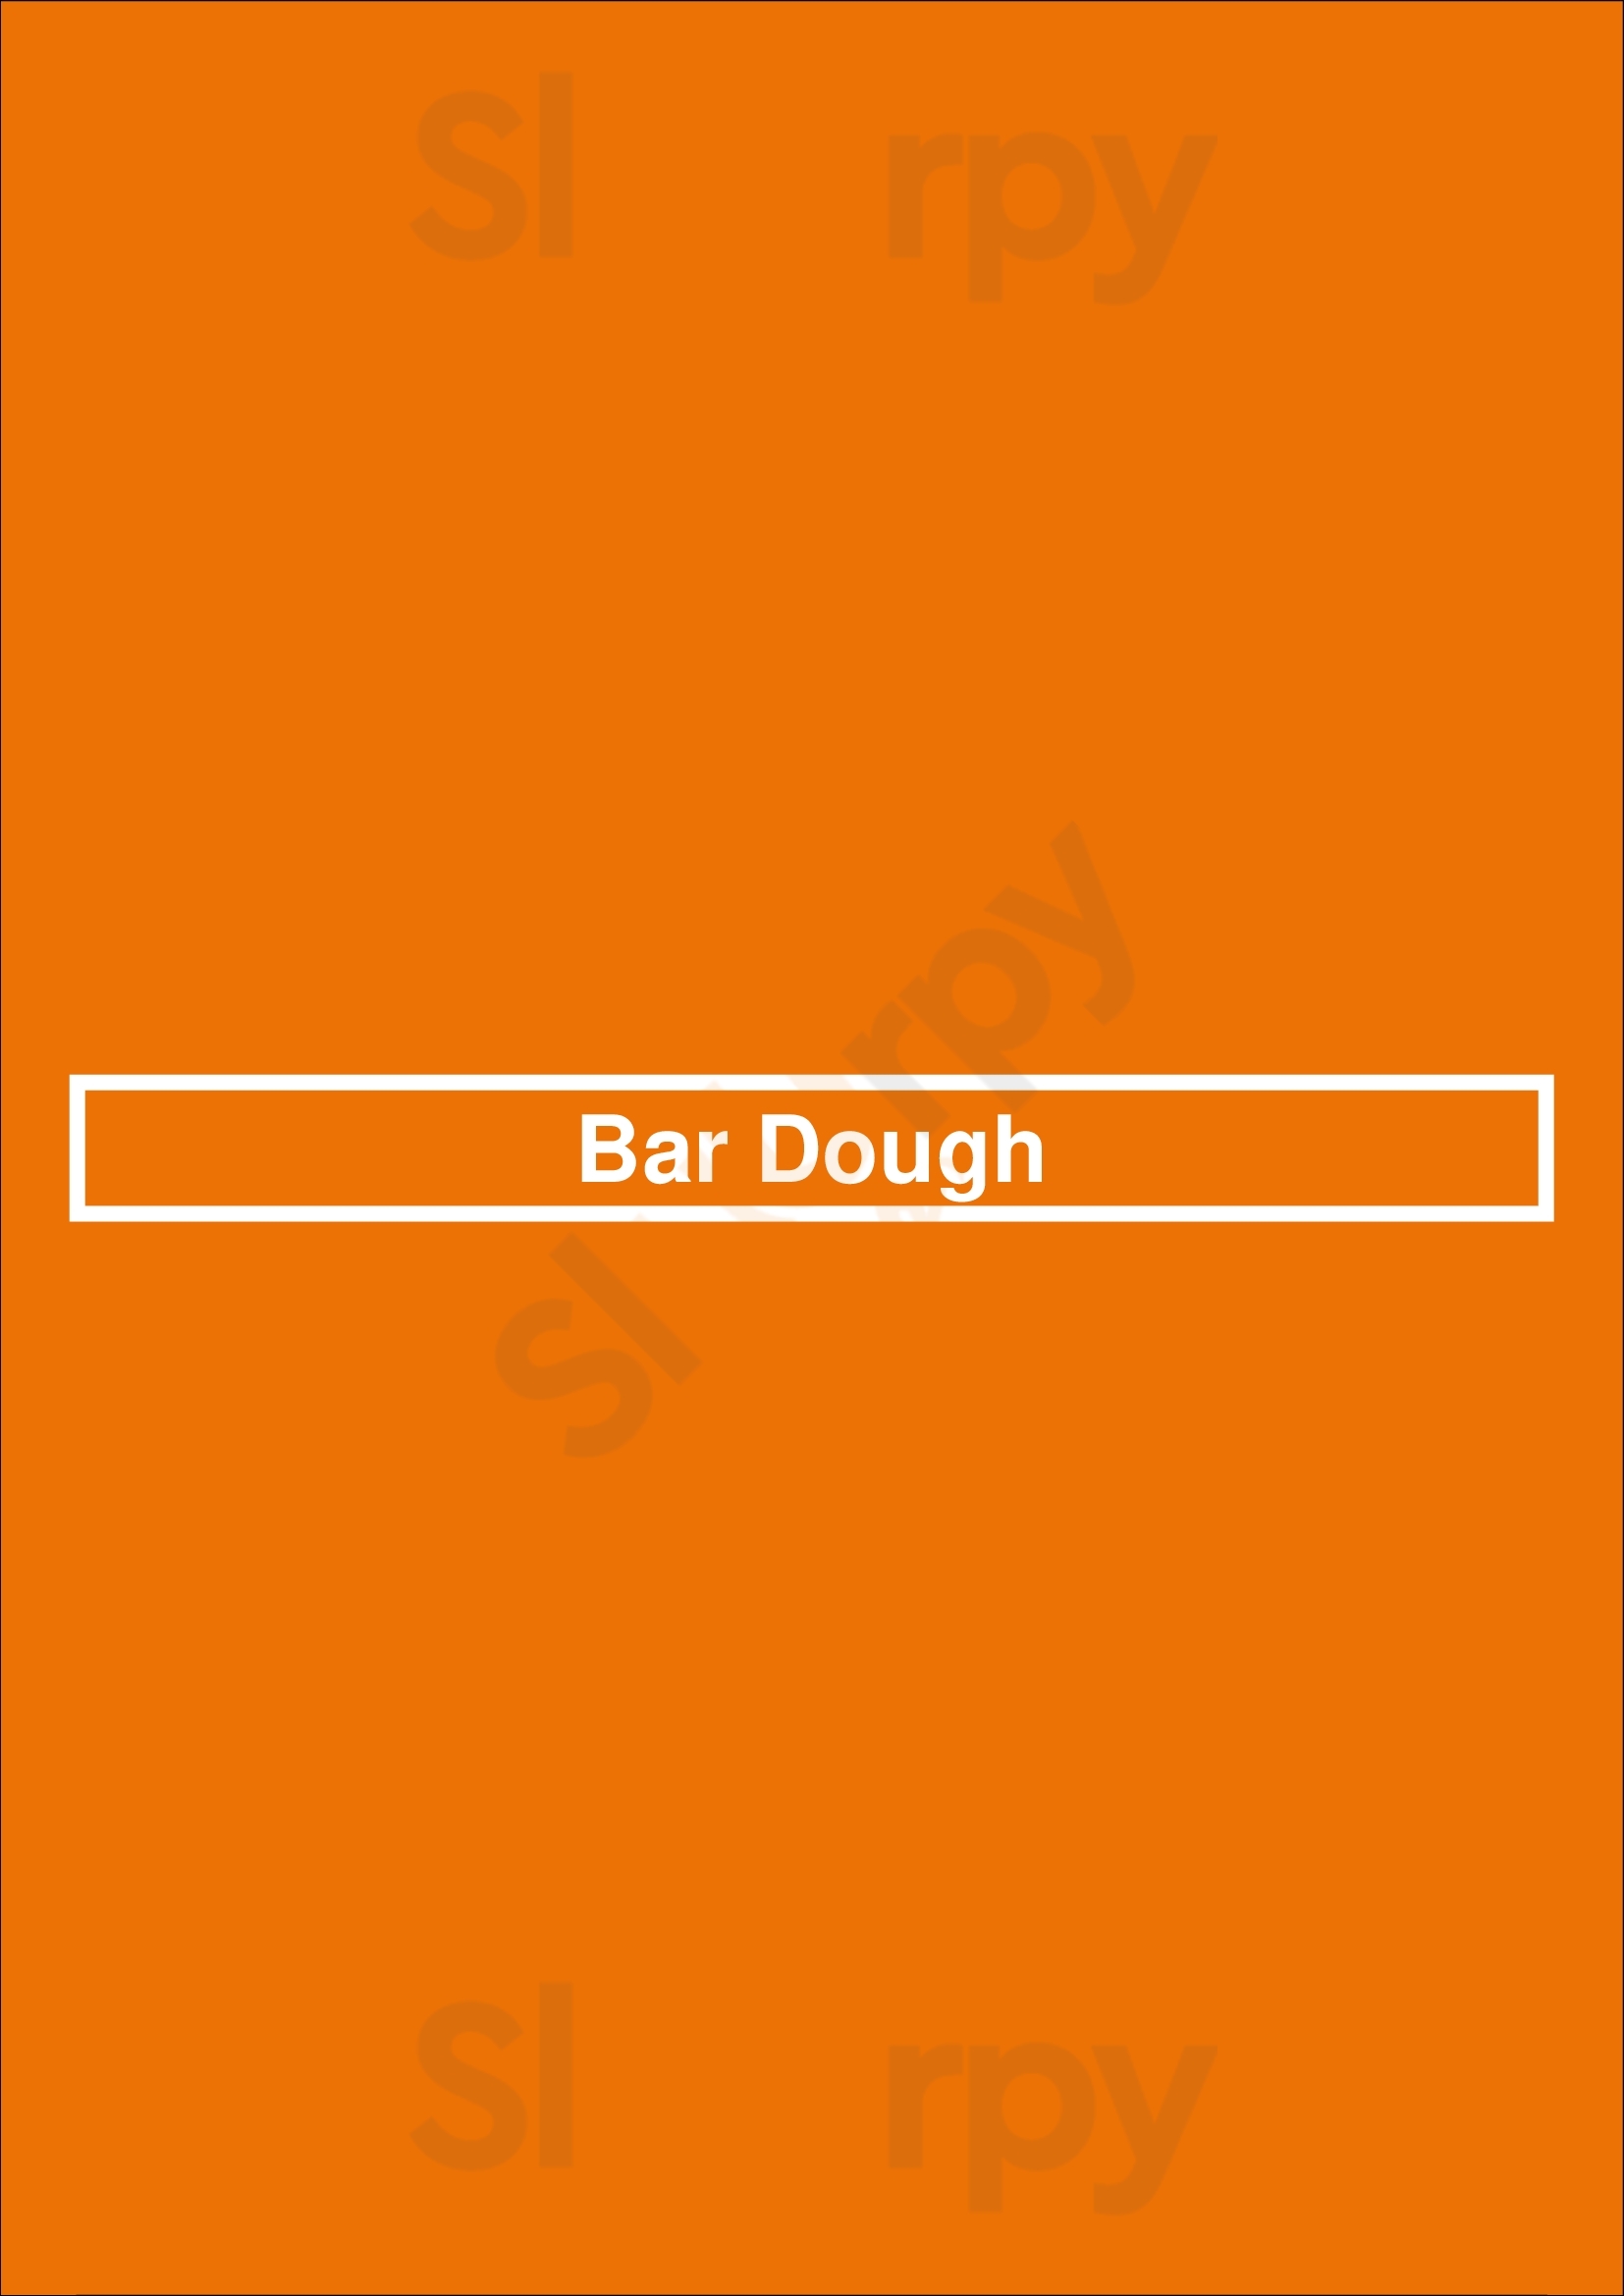 Bar Dough Denver Menu - 1